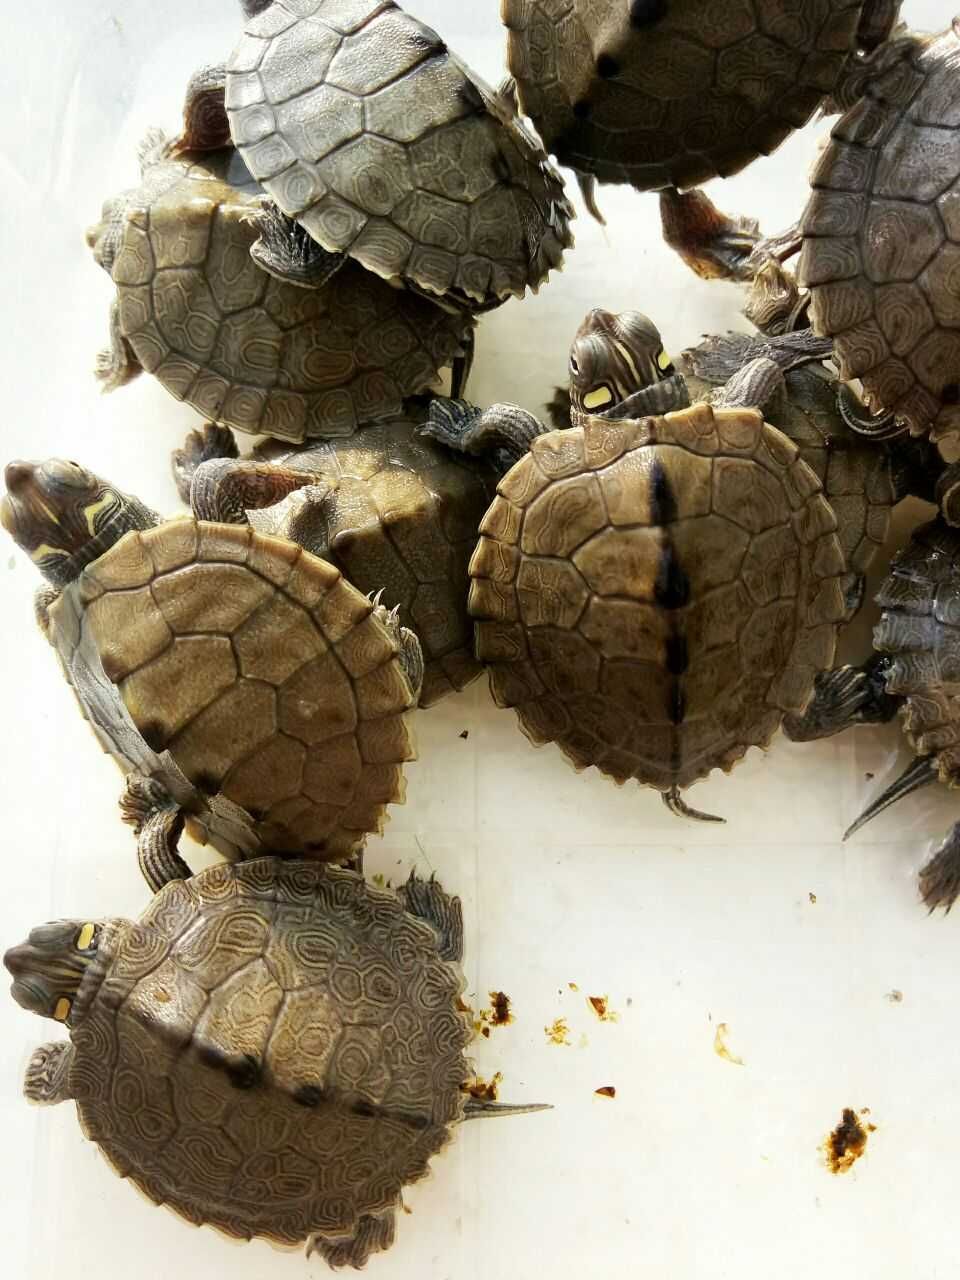 Черепашки почти карликовые Самцы и самки пилоспинной черепахи